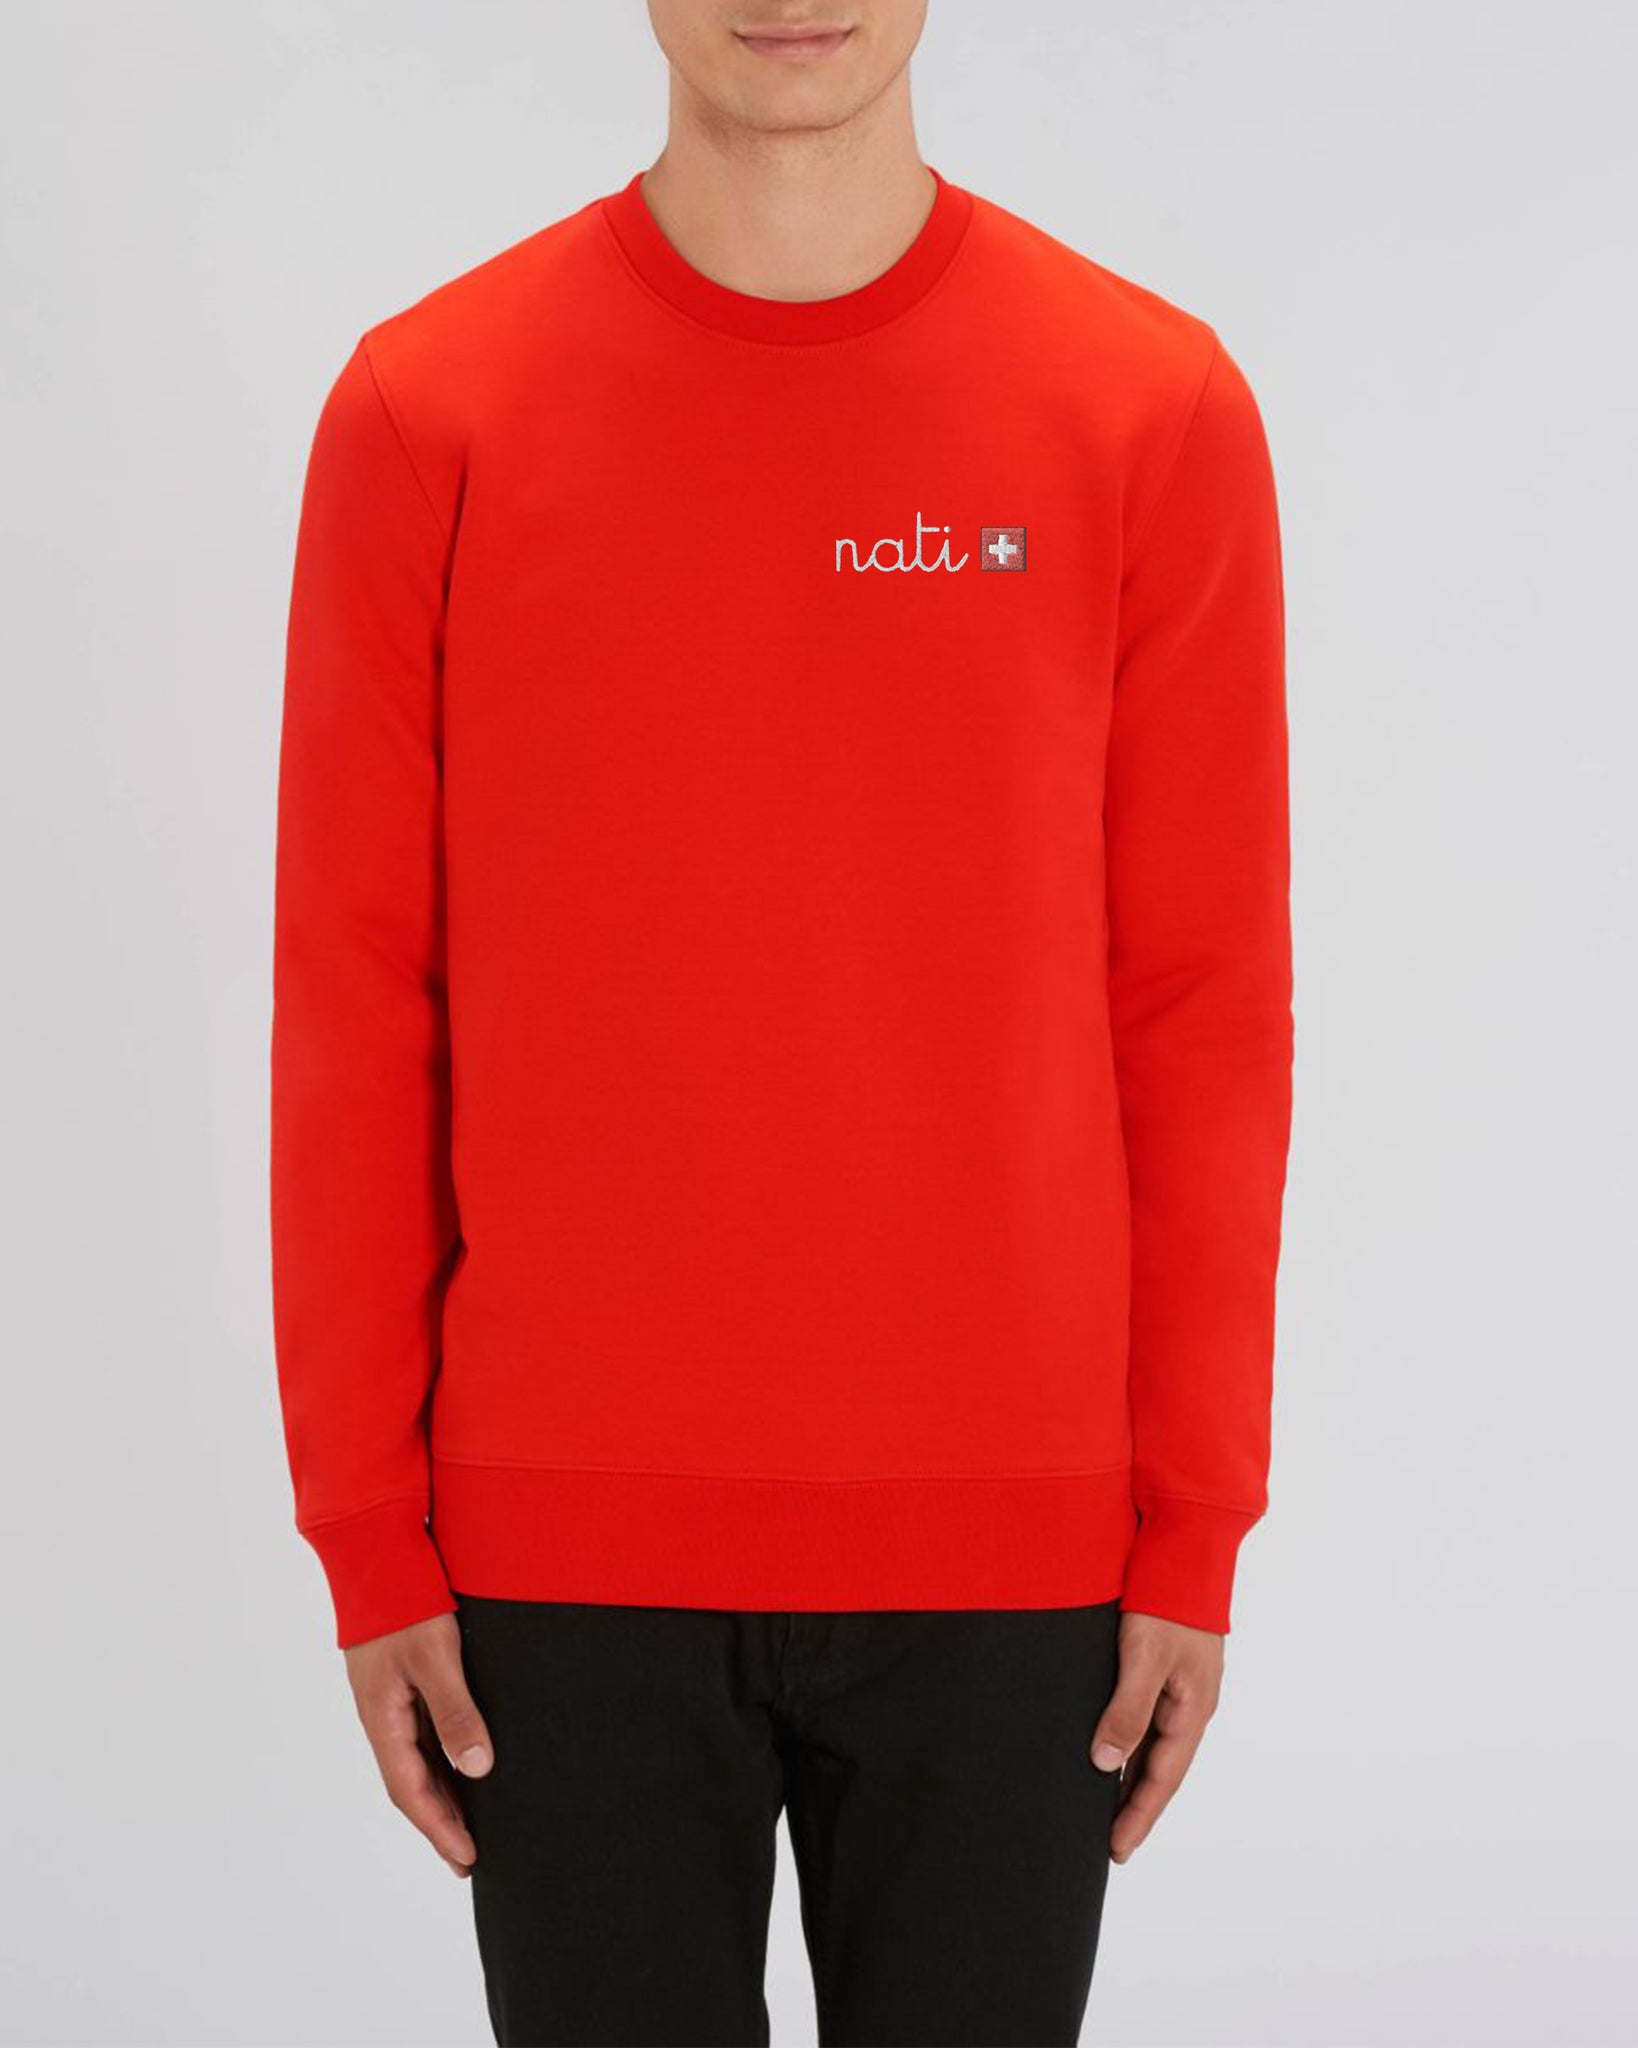 Nati 🇨🇭 embroidered sweatshirt